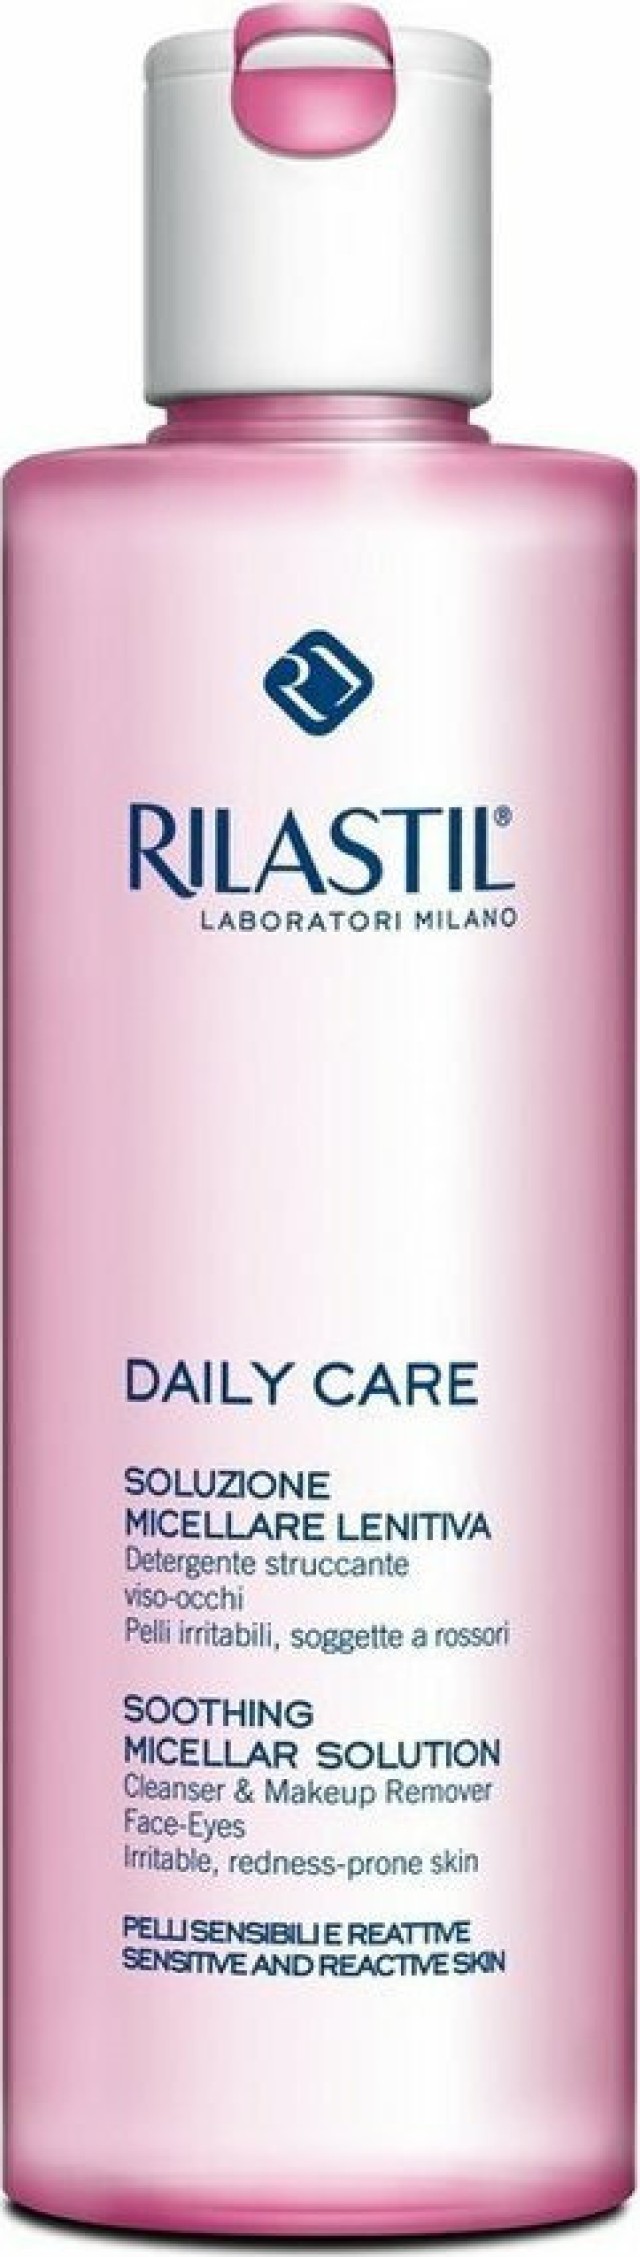 RILASTIL Daily Care Soothing Micellar Solution Καταπραϋντικό Καθαριστικό Ντεμακιγιάζ Προσώπου & Ματιών Για Ευερέθιστες Επιδερμίδες, 250ml